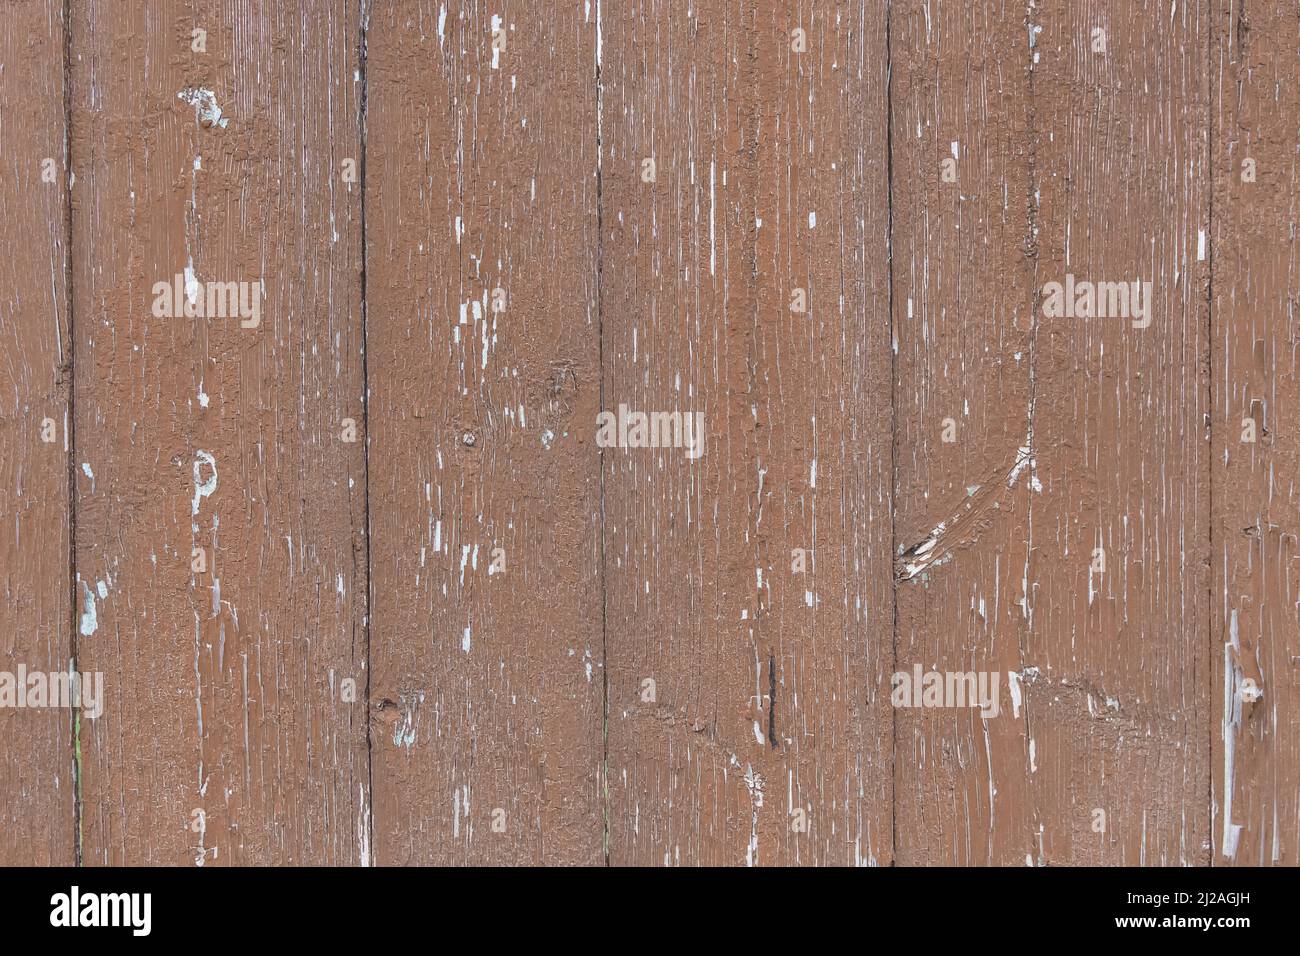 Vieux panneaux de clôture usés en bois texture abîmée brun sale obsolète arrière-plan de la planche. Banque D'Images